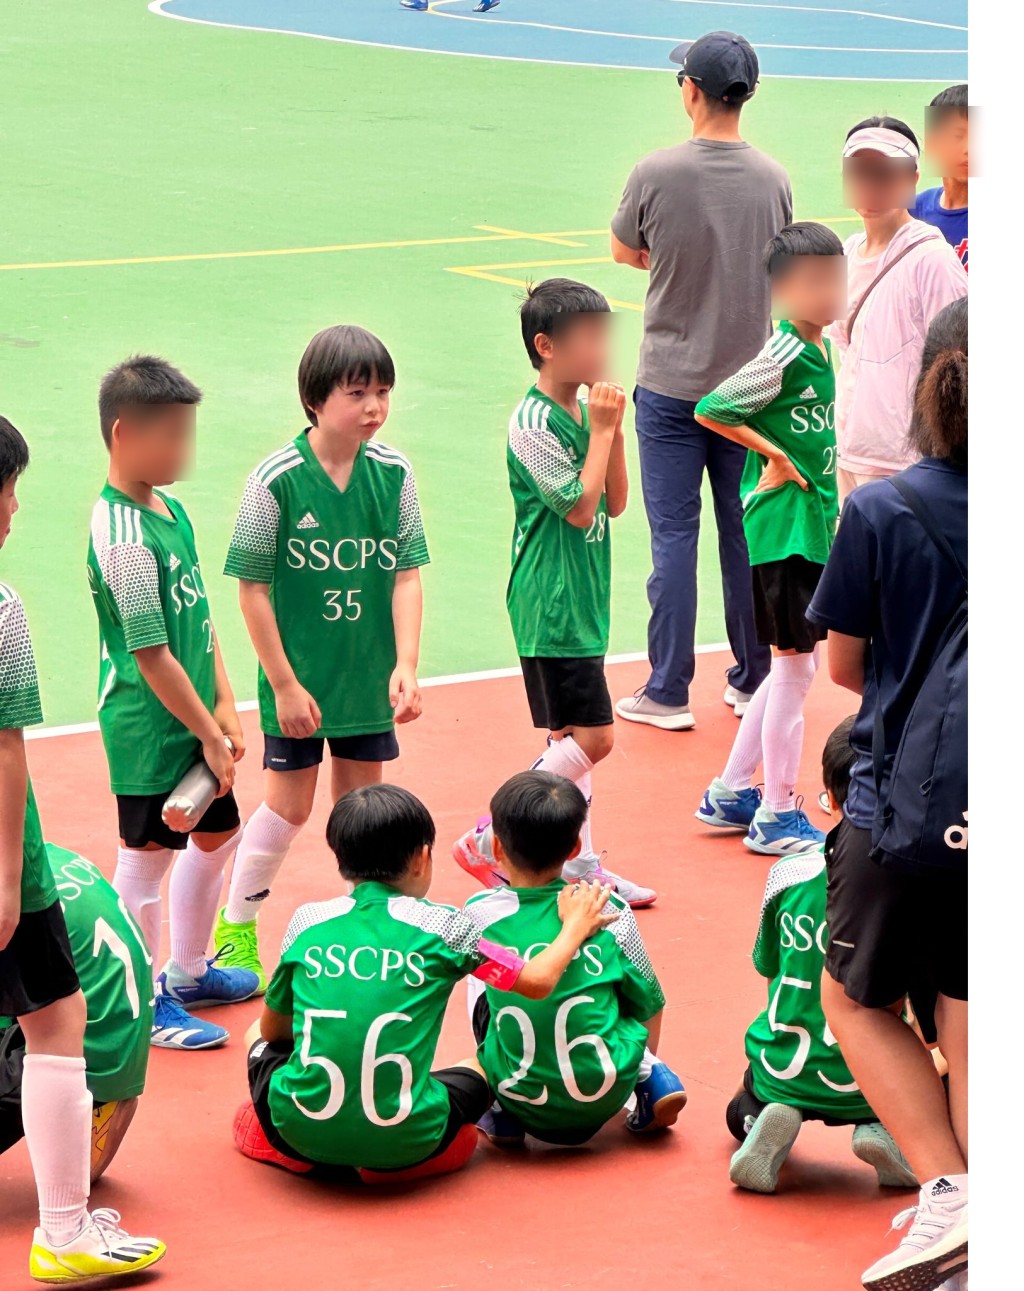 穿上SSCPS 35號綠色波衫的大仔雷棨宇，襯上黑色短褲、長波襪及螢光綠色鞋，猶如足球小將般。